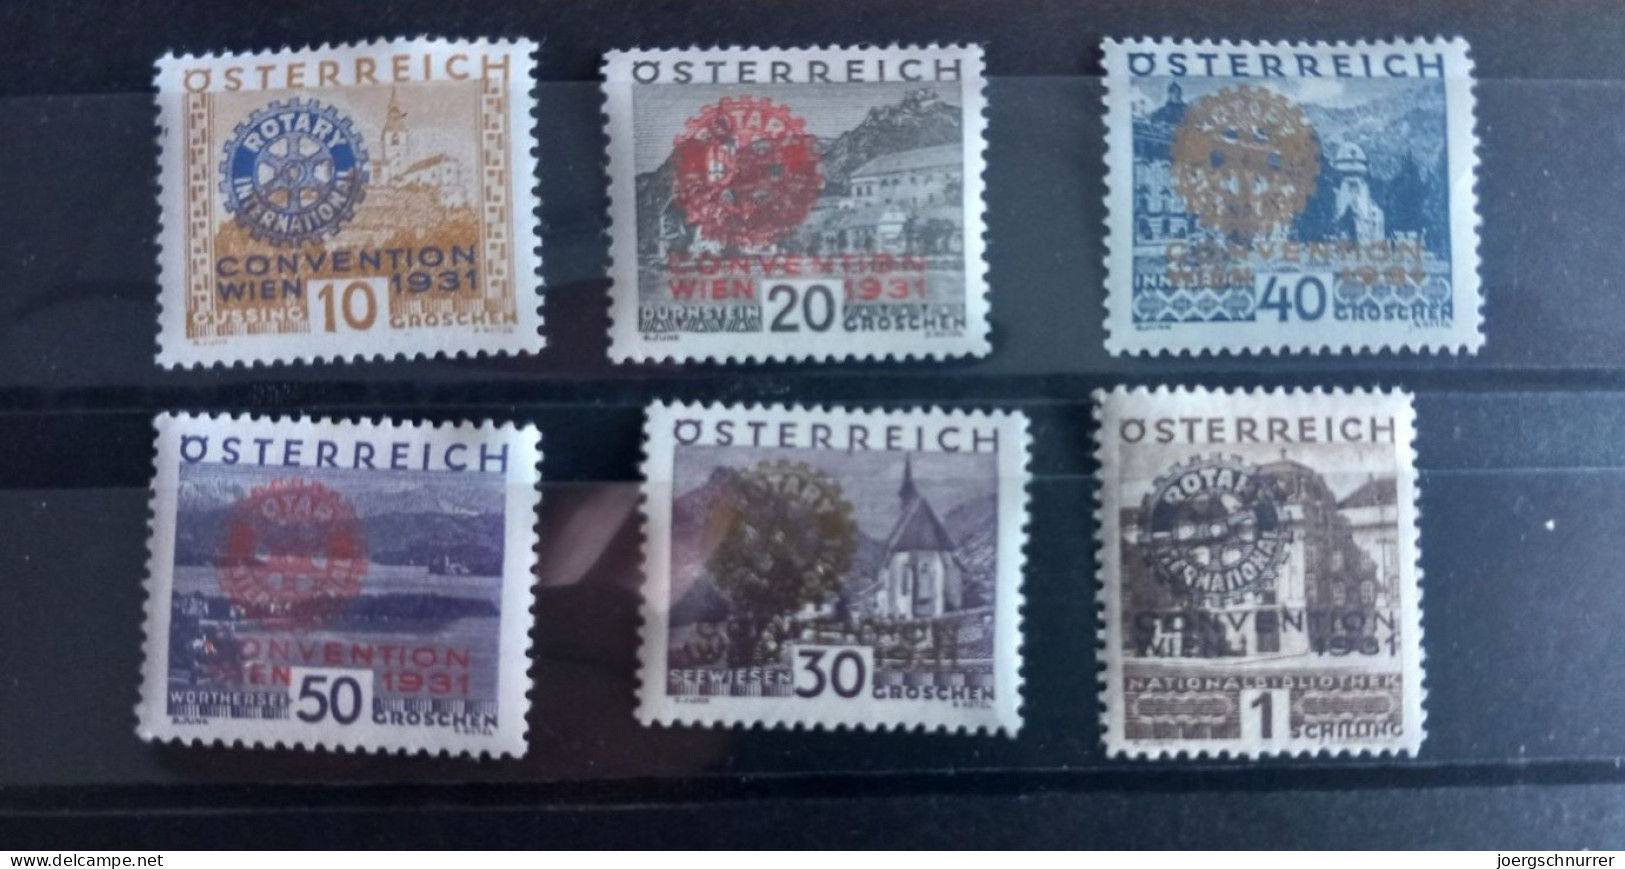 Rotarier Kongress 1931 - Gefalzt - MI 518 - MI 523 - KW: 250,00 € - Unused Stamps